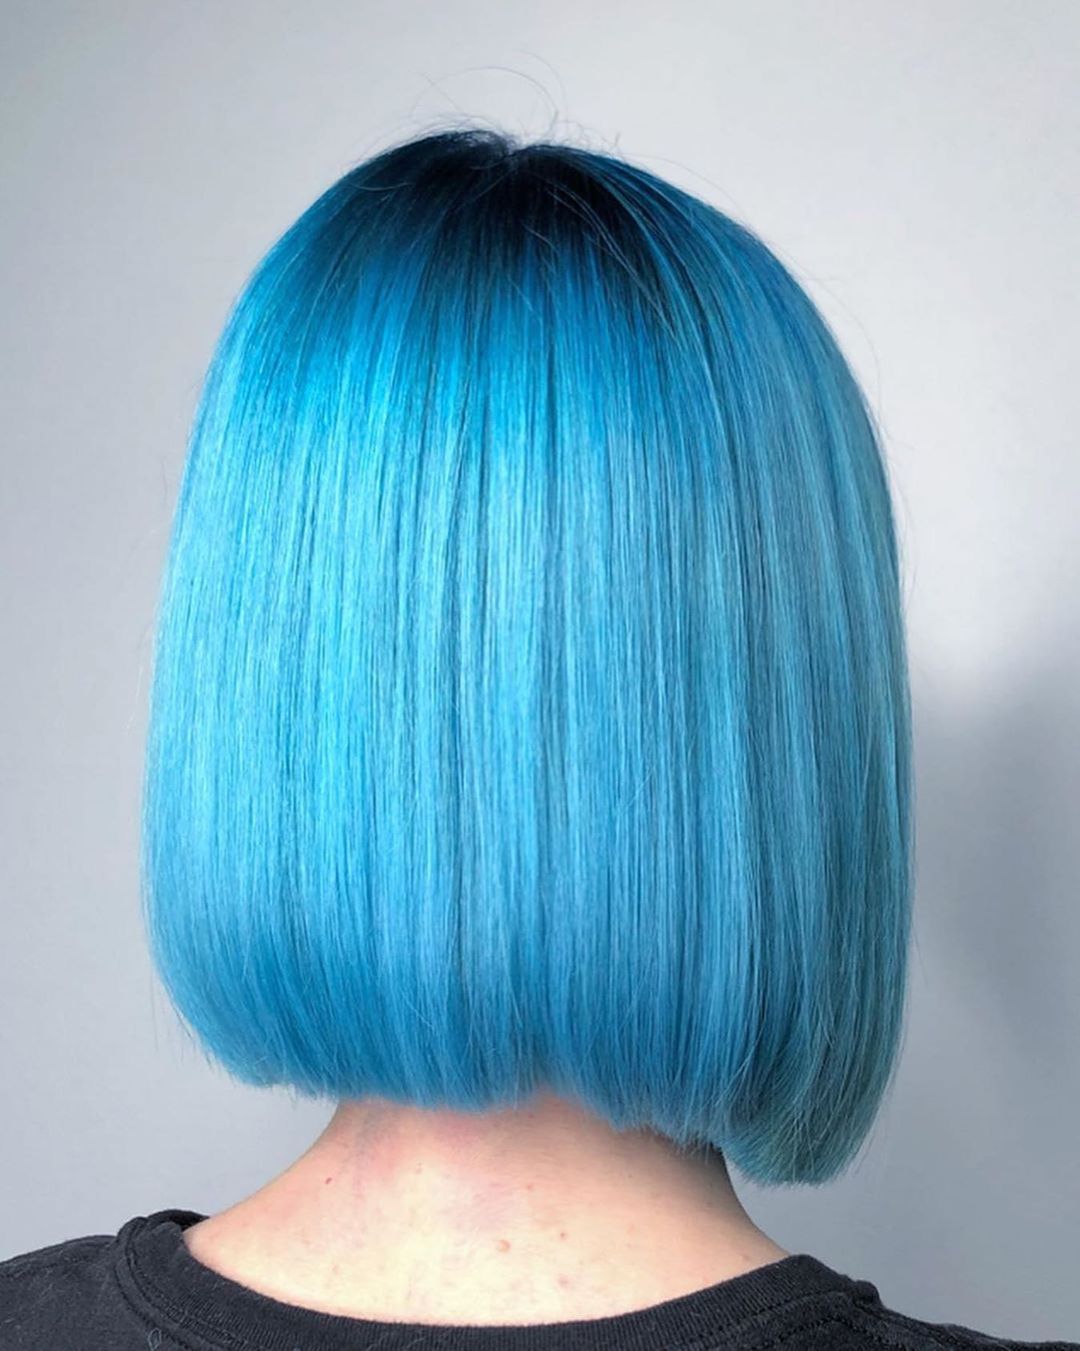 временная краска для волос голубая